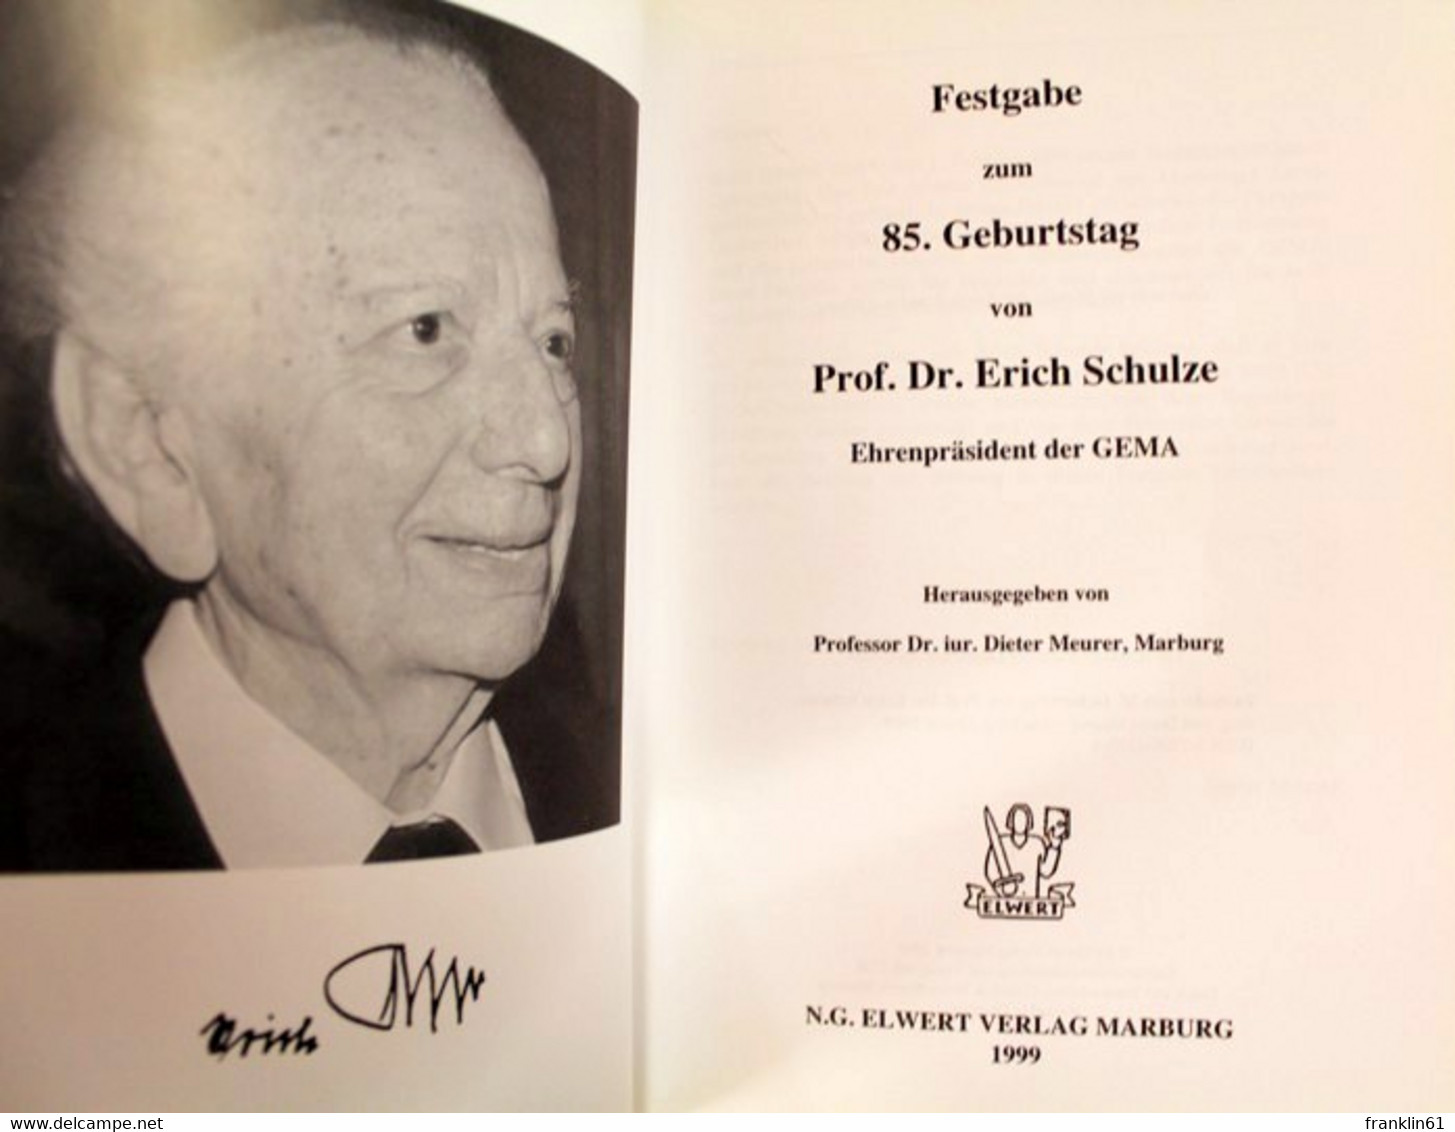 Festgabe Zum 85.Geburtstag Von Erich Schulze. Ehrenpräsident Der GEMA. - Musik